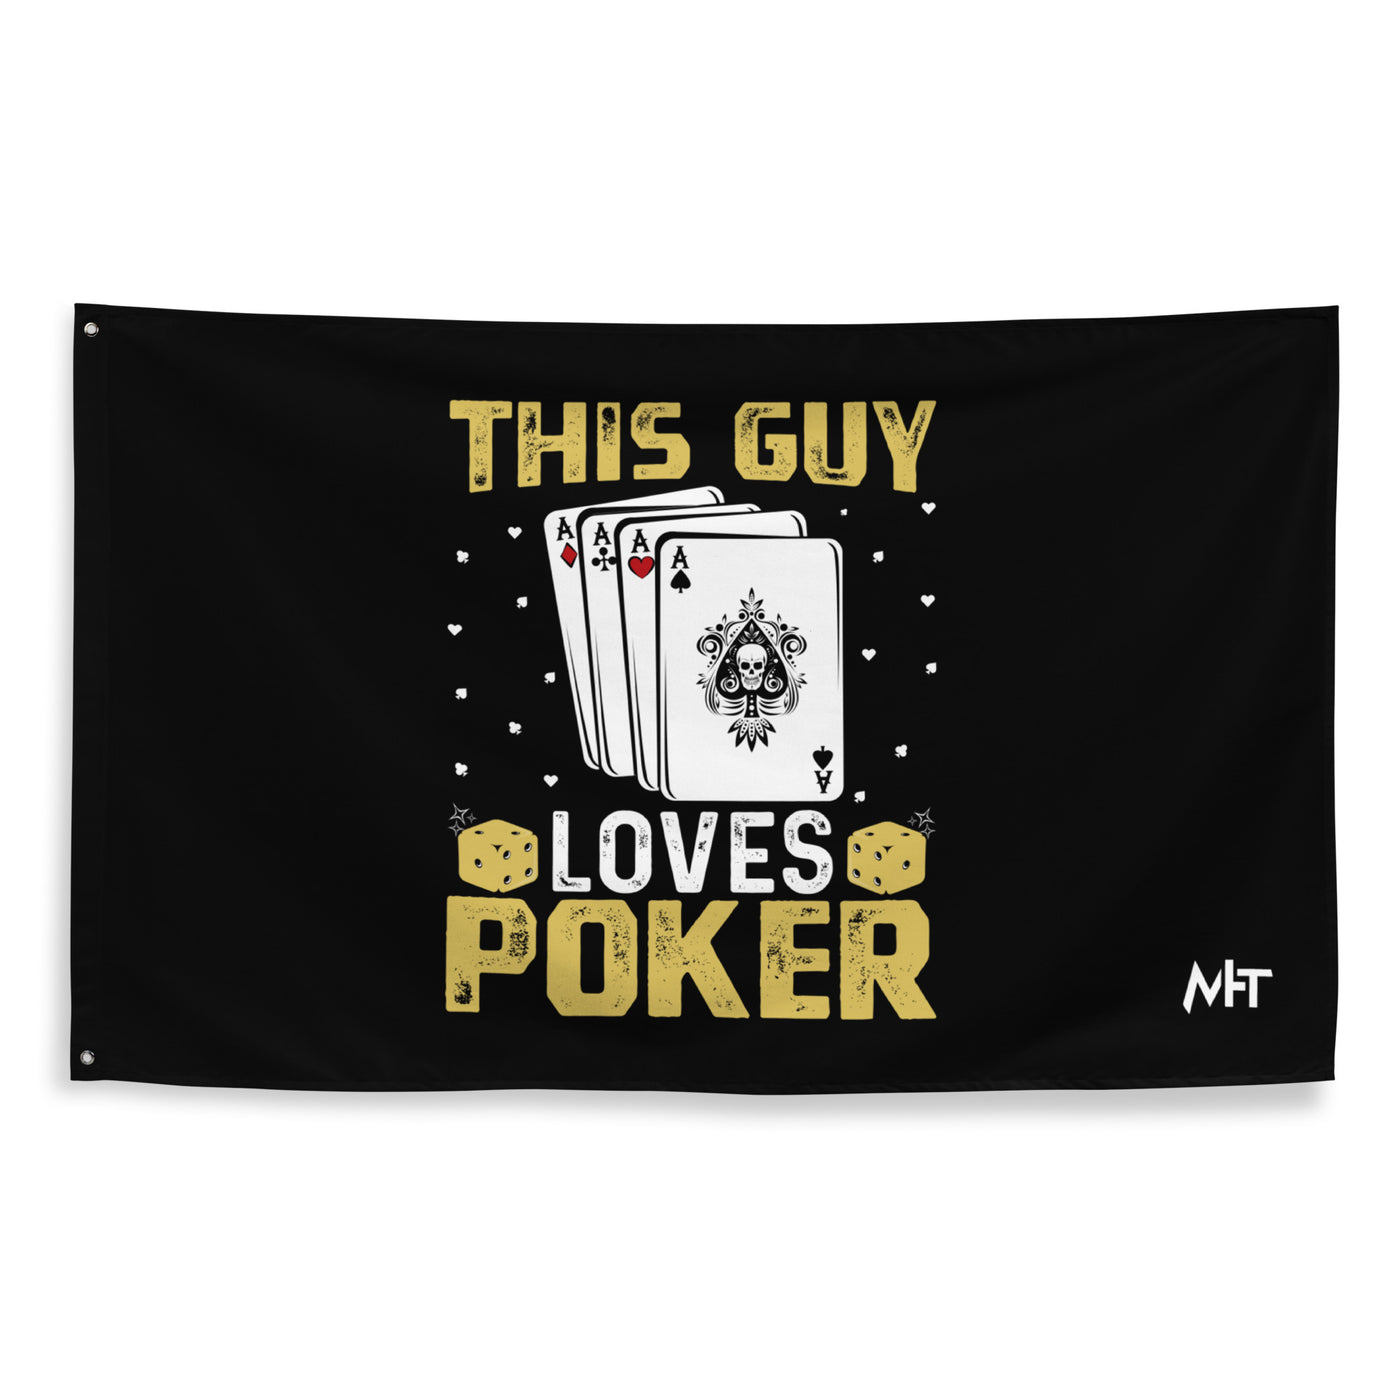 This Guy Loves Poker - Flag